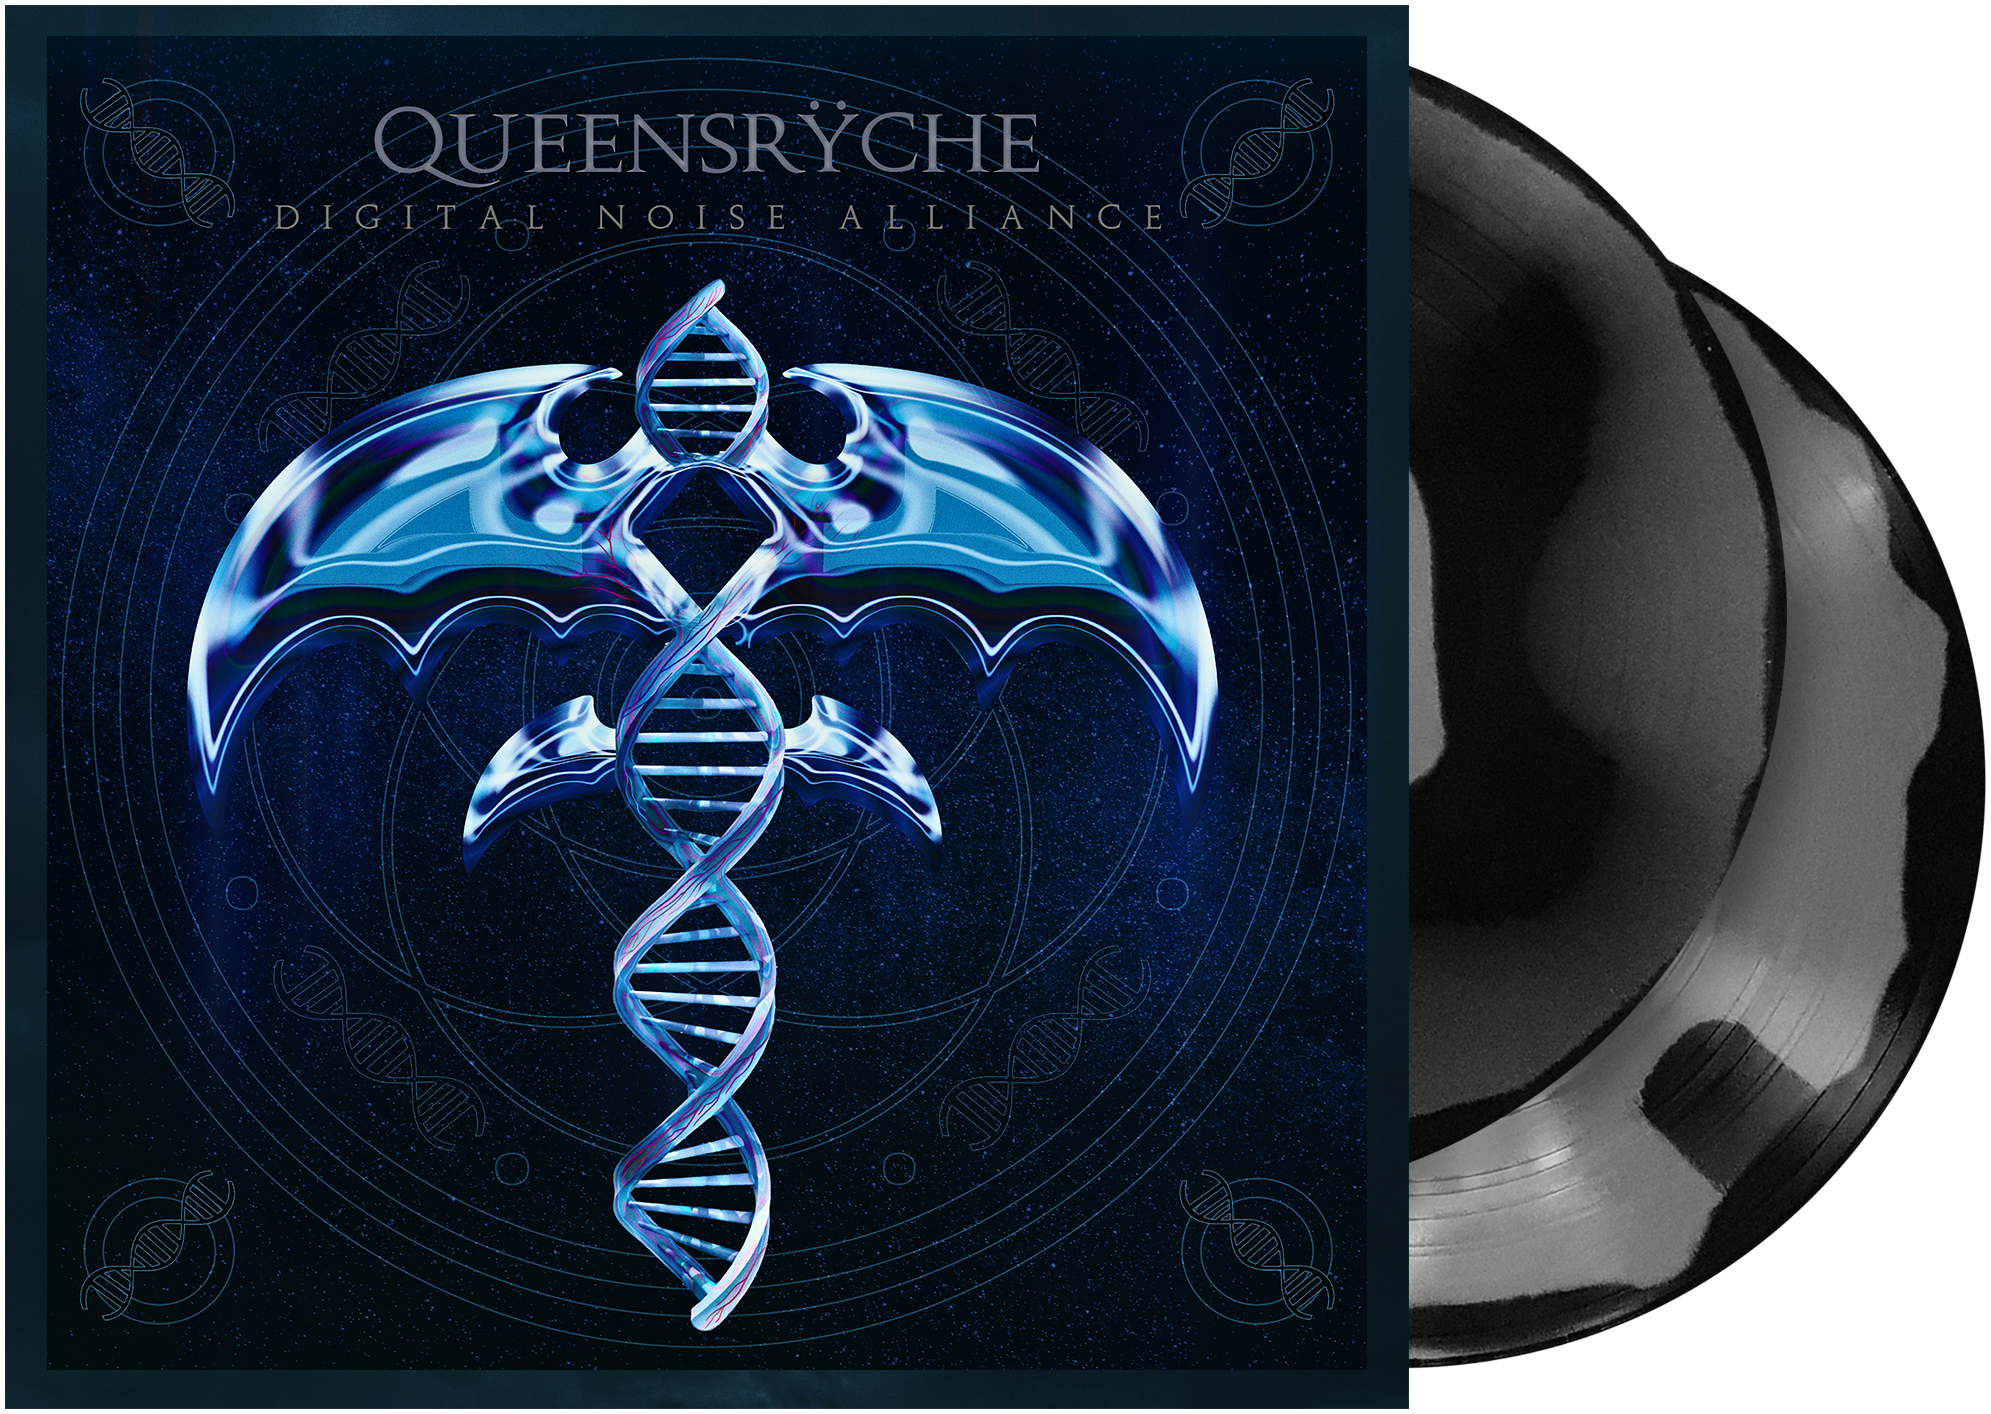 Queensryche - Digital noise alliance - LP - farbig - EMP Exklusiv!